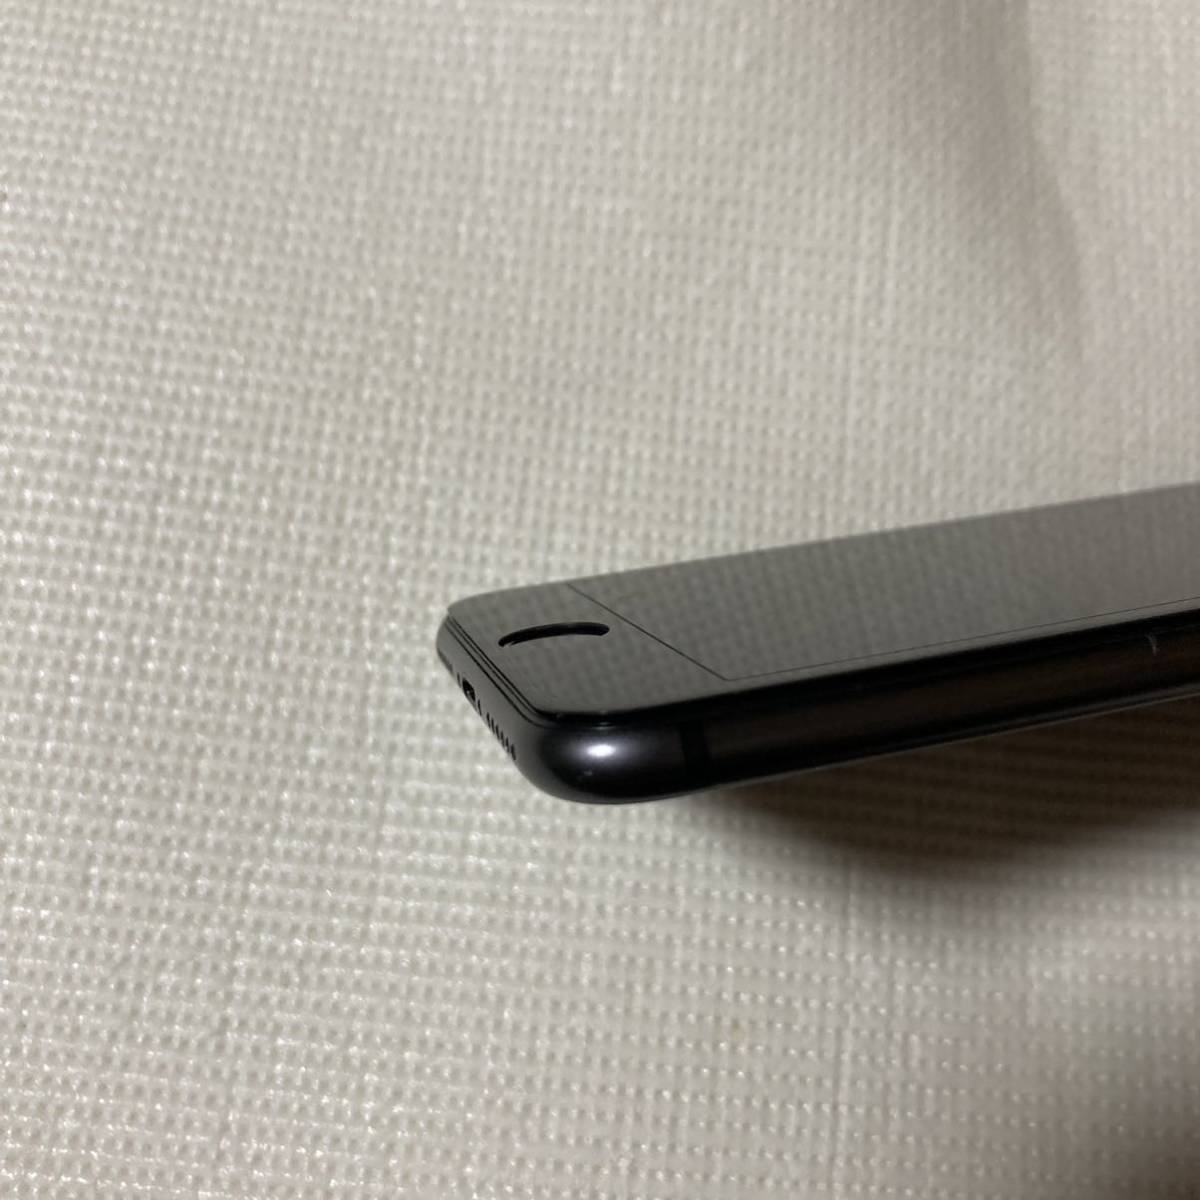 送料無料 美品 SIMフリー iPhone8 64GB スペースグレー バッテリー最大容量100% SIMロック解除済